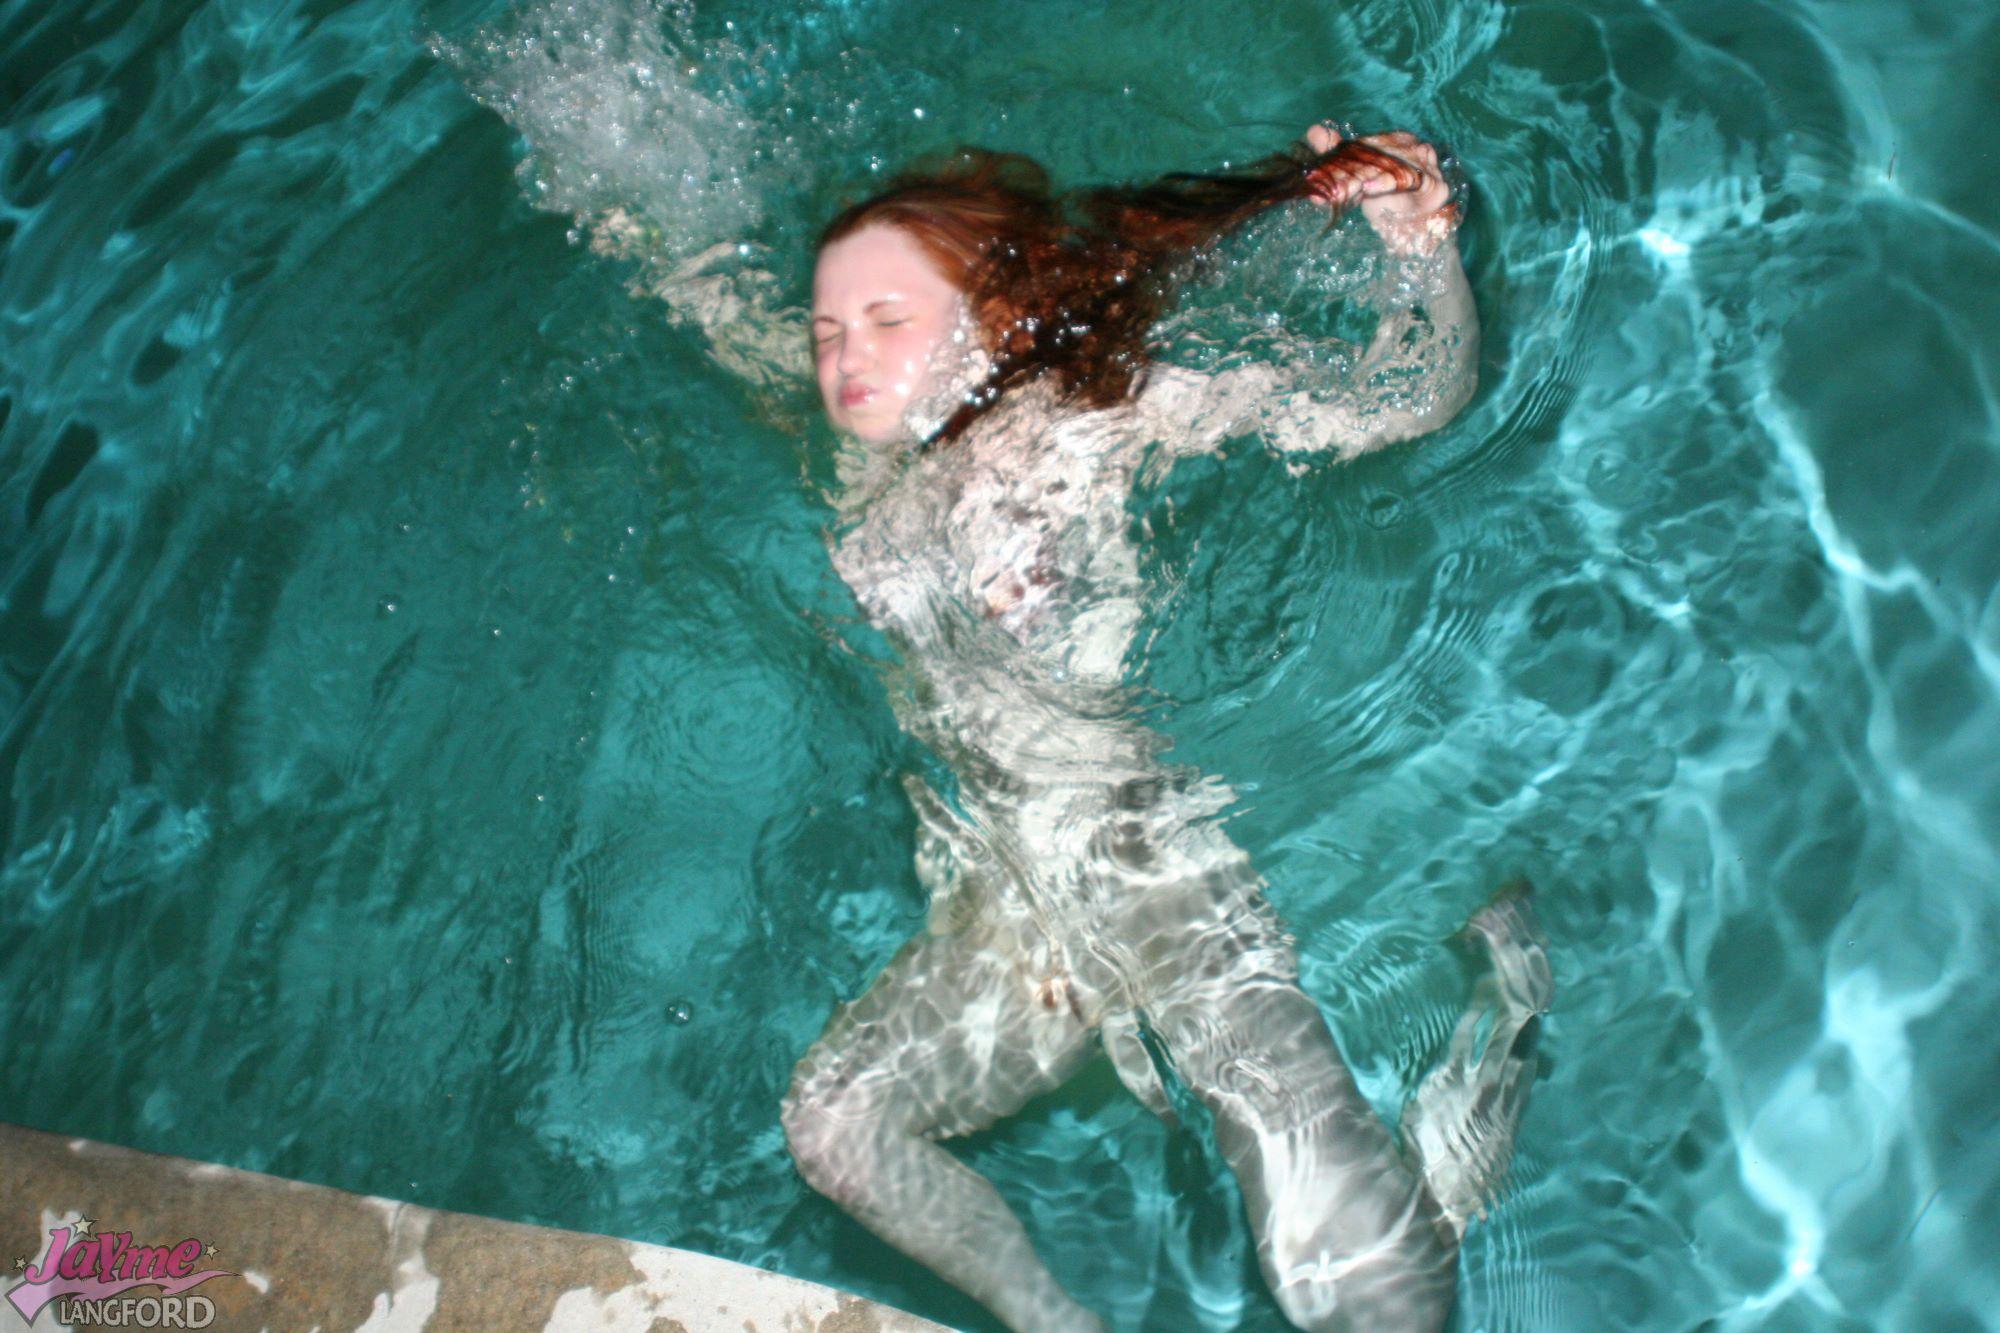 Immagini di jayme langford andando per una calda nuotata nuda
 #55215721